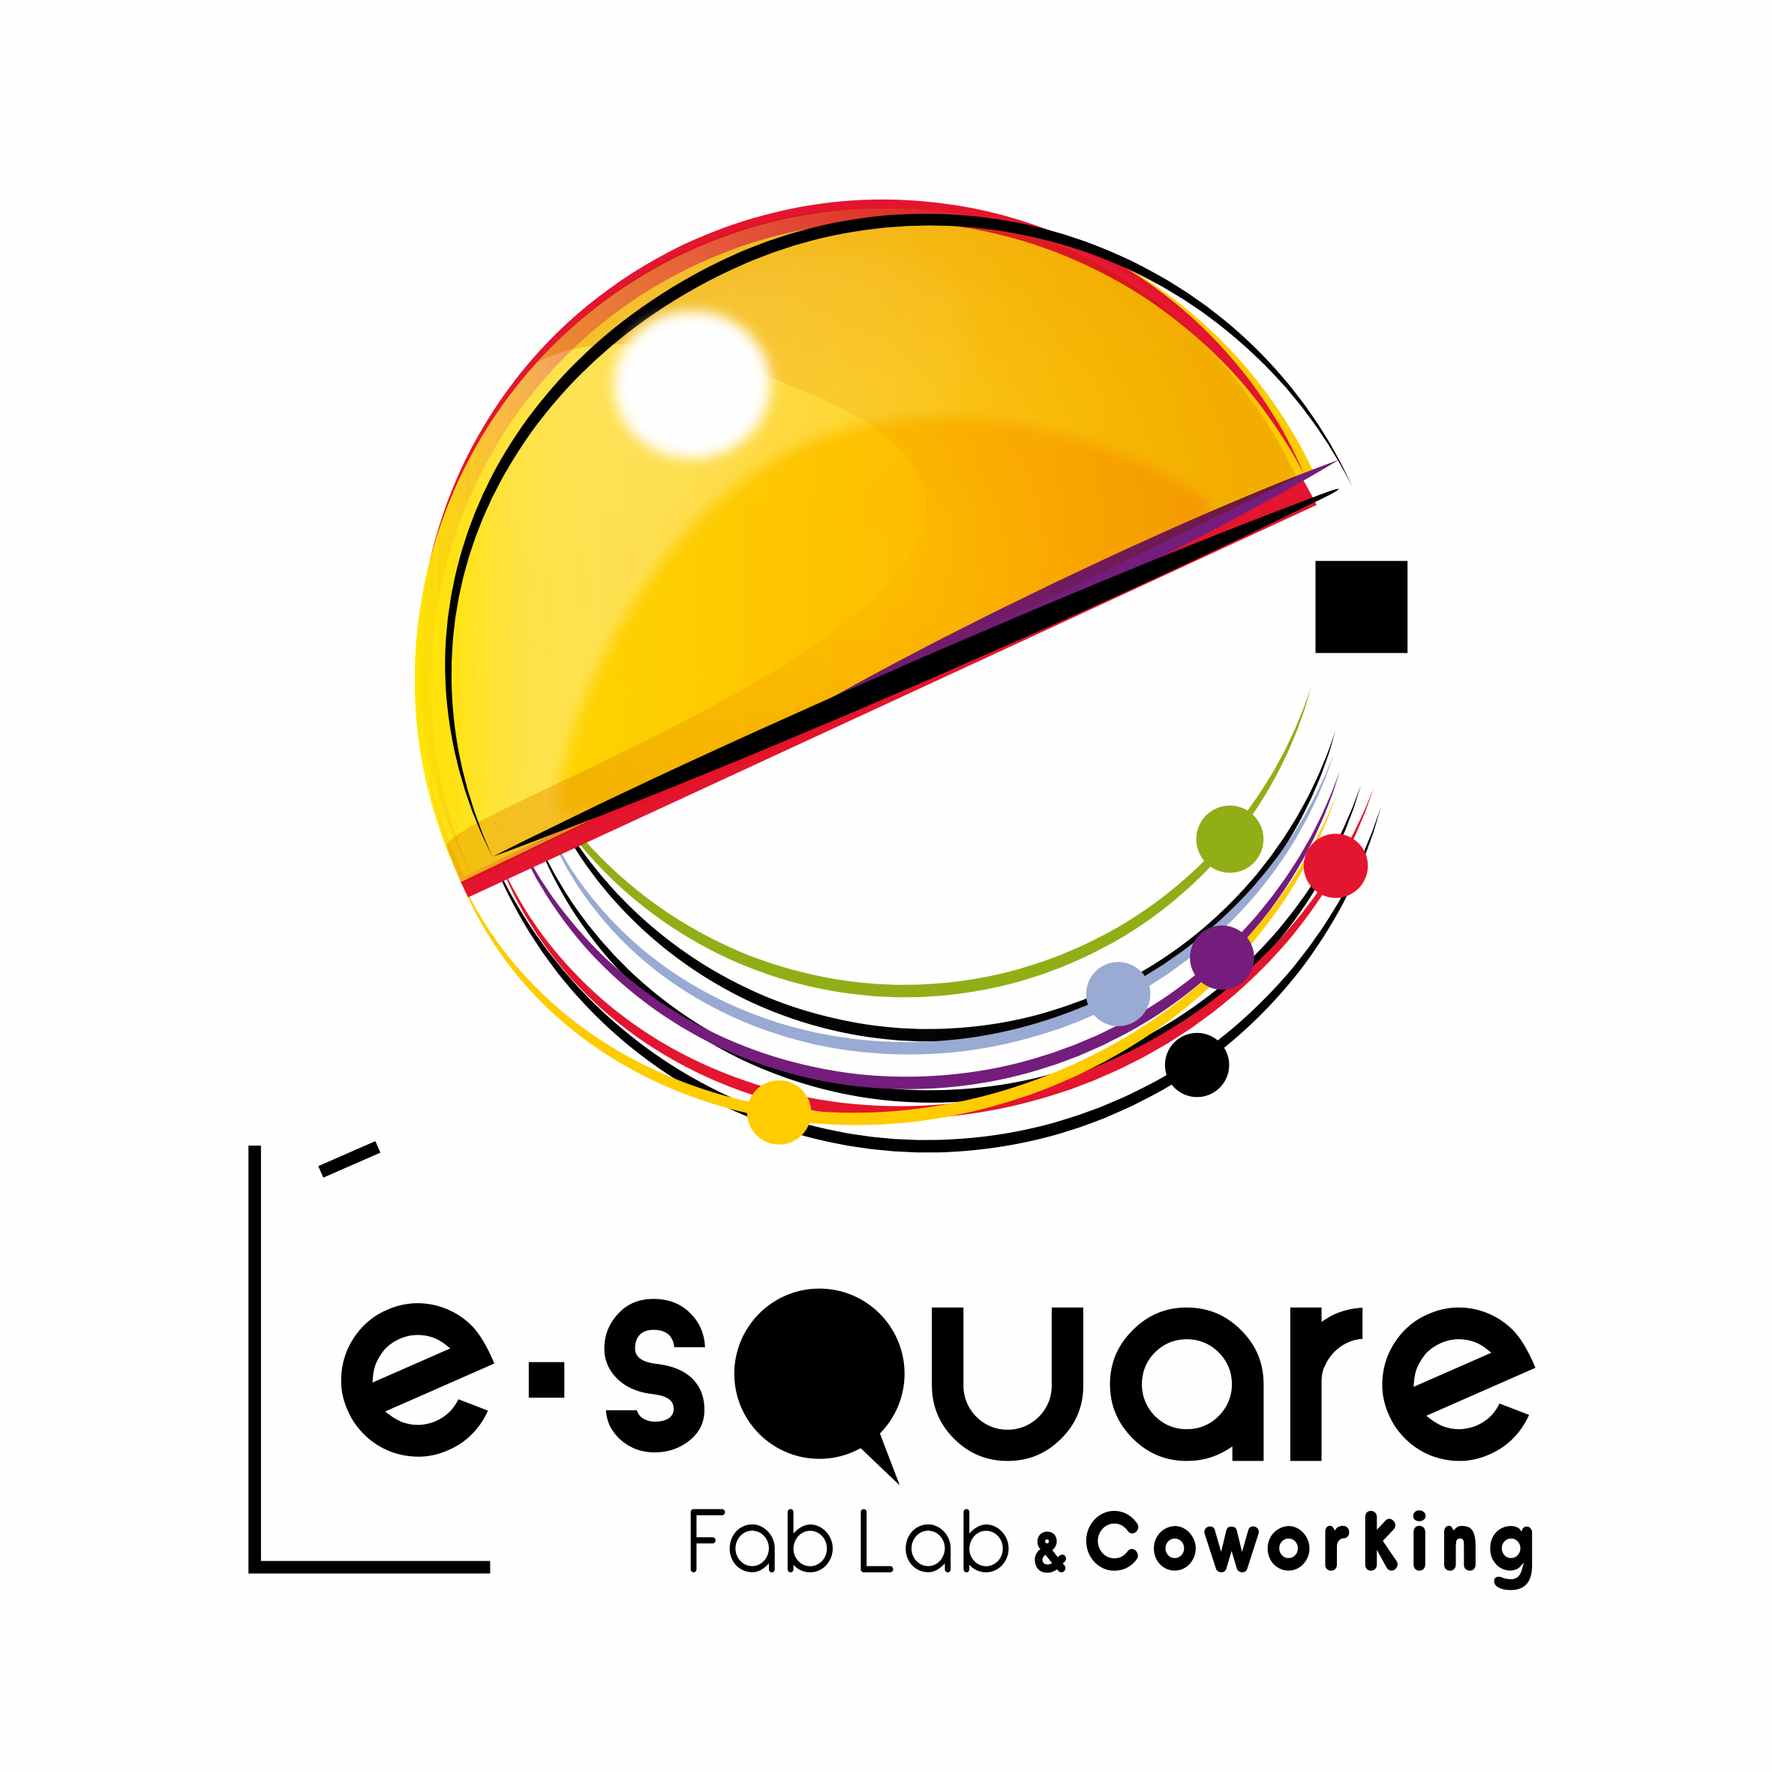 Group-e-Square logo.jpg